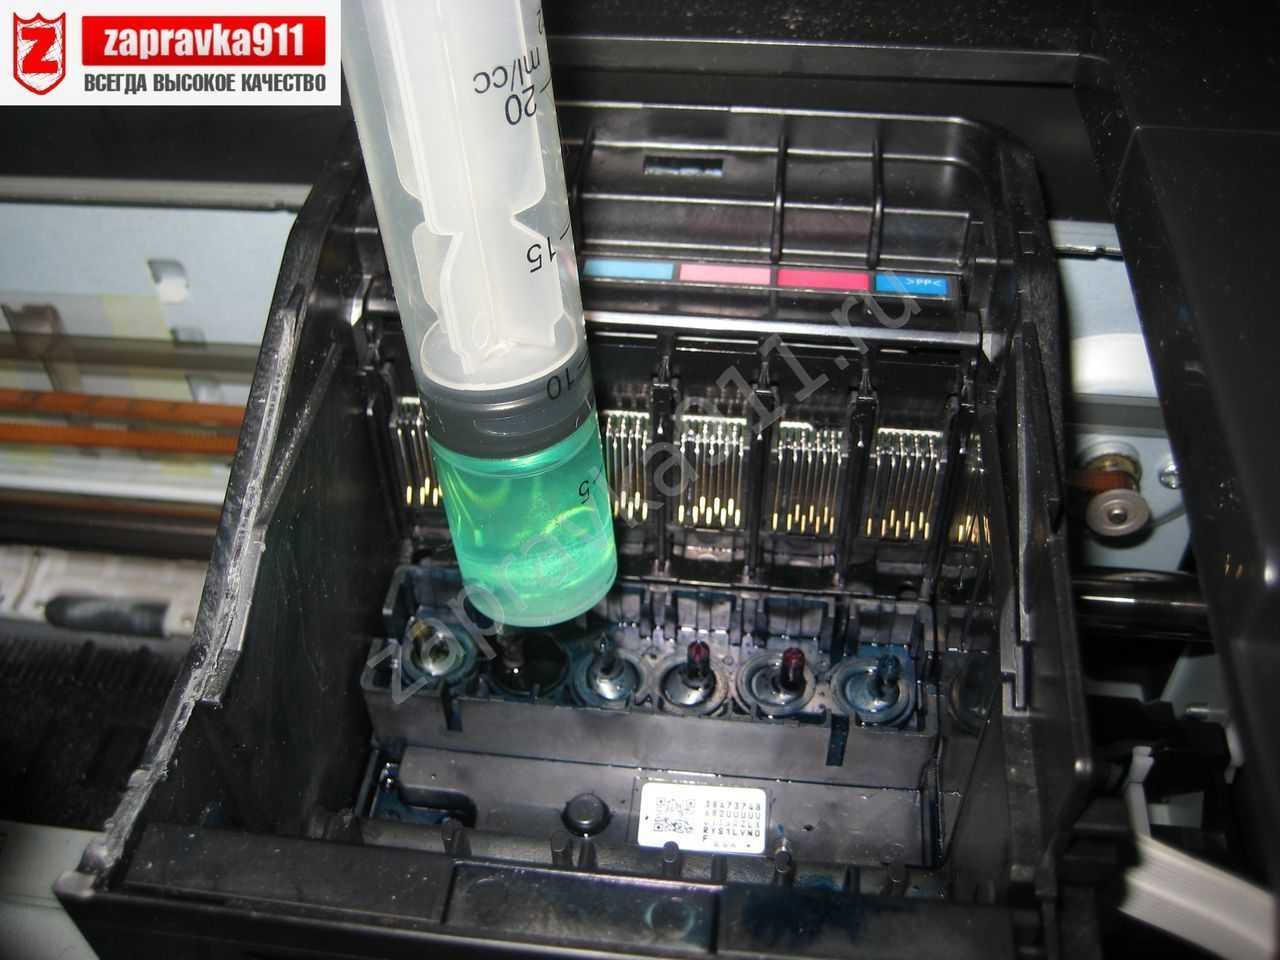 Чистка печатающей головки принтера epson